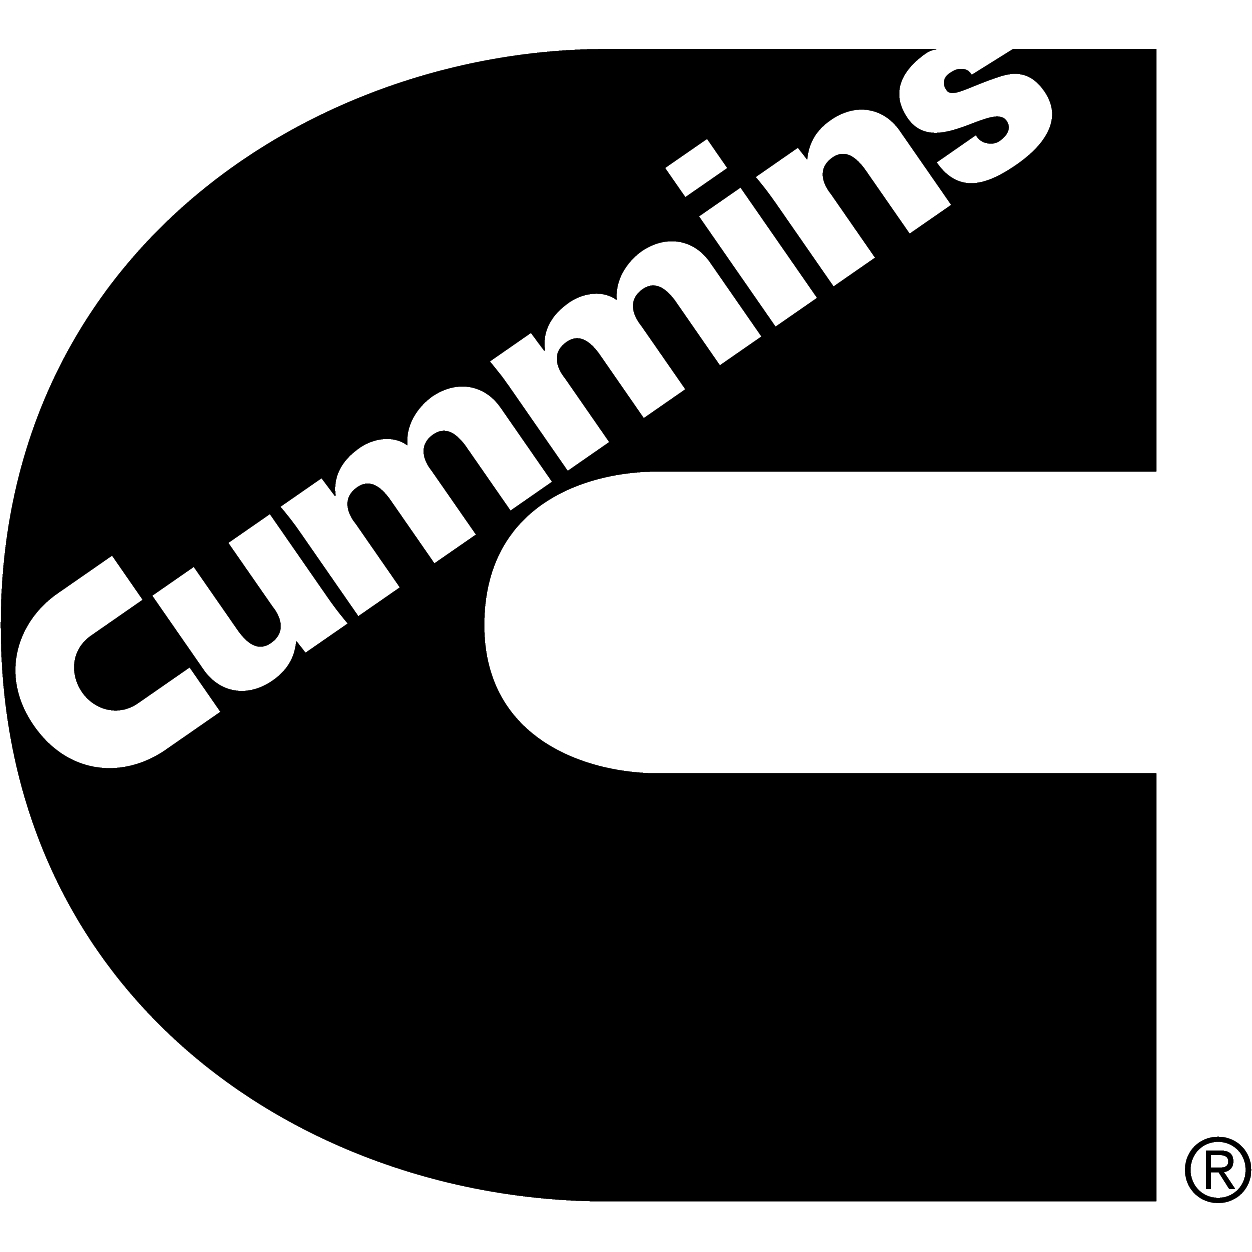 Cummins Sales and Service - (PERMANENTLY CLOSED) - Entretien et réparation de camions